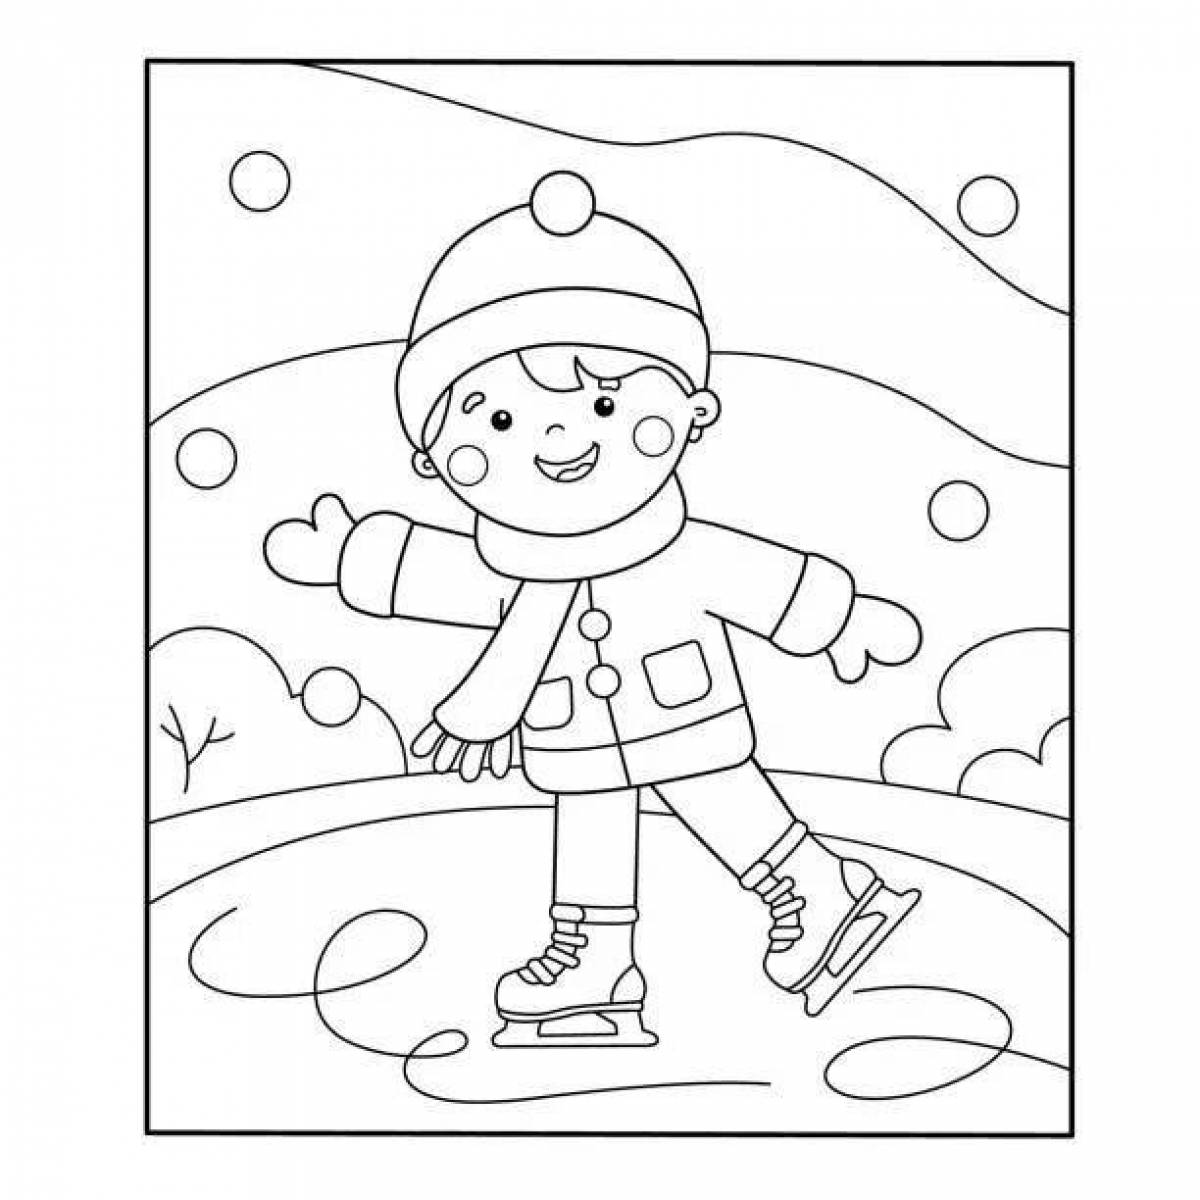 Preschool winter sports #2